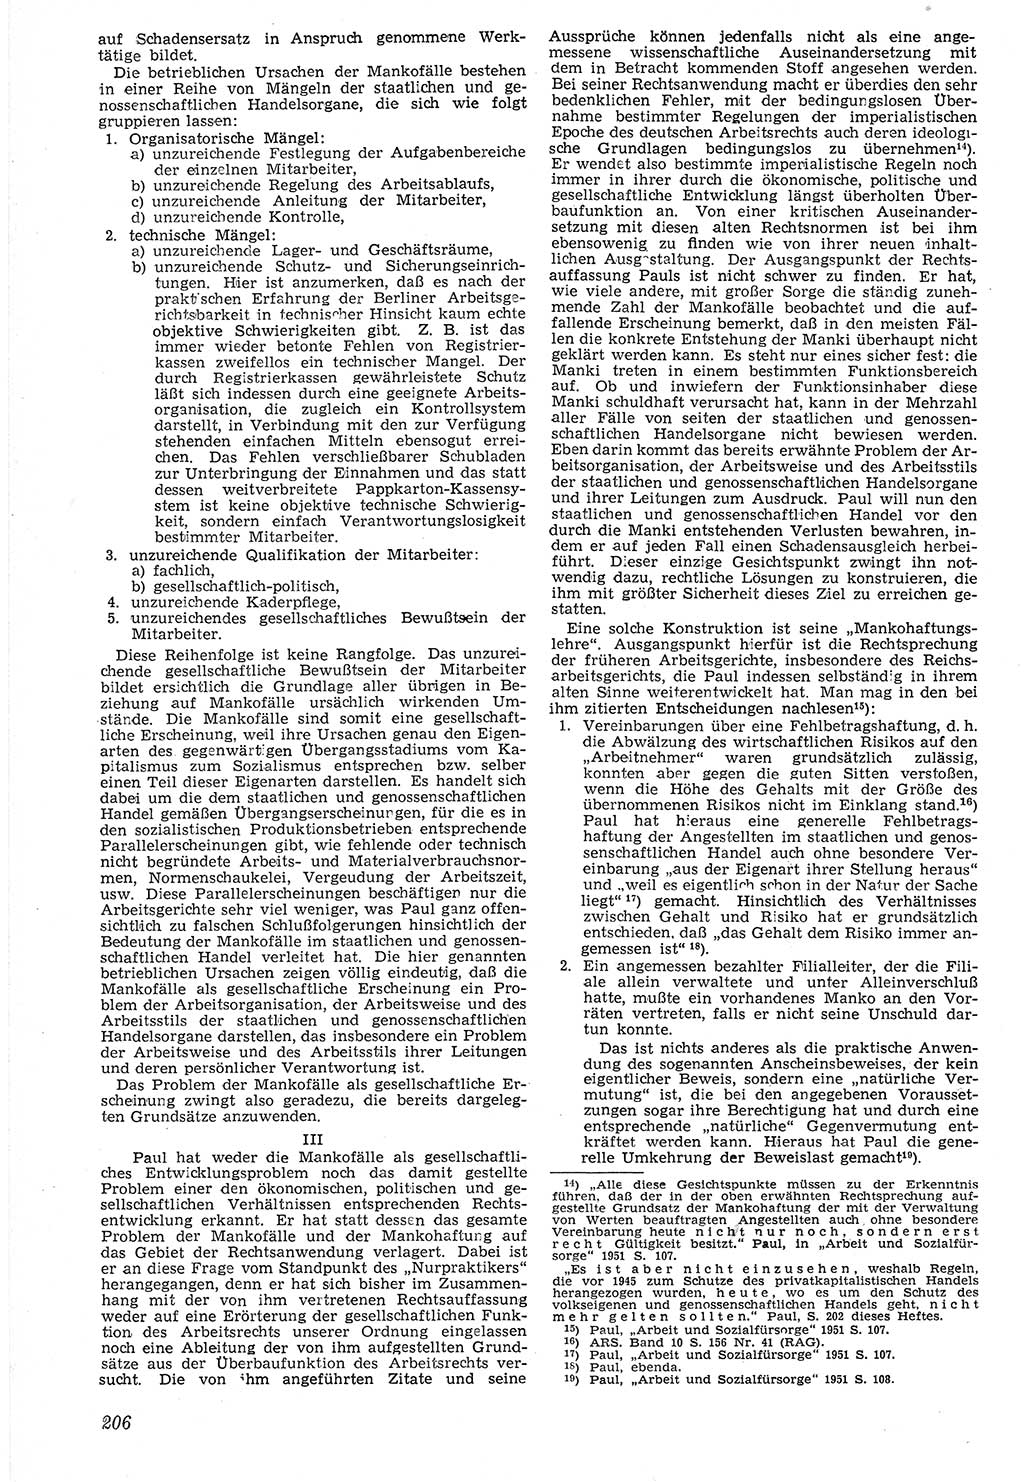 Neue Justiz (NJ), Zeitschrift für Recht und Rechtswissenschaft [Deutsche Demokratische Republik (DDR)], 7. Jahrgang 1953, Seite 206 (NJ DDR 1953, S. 206)